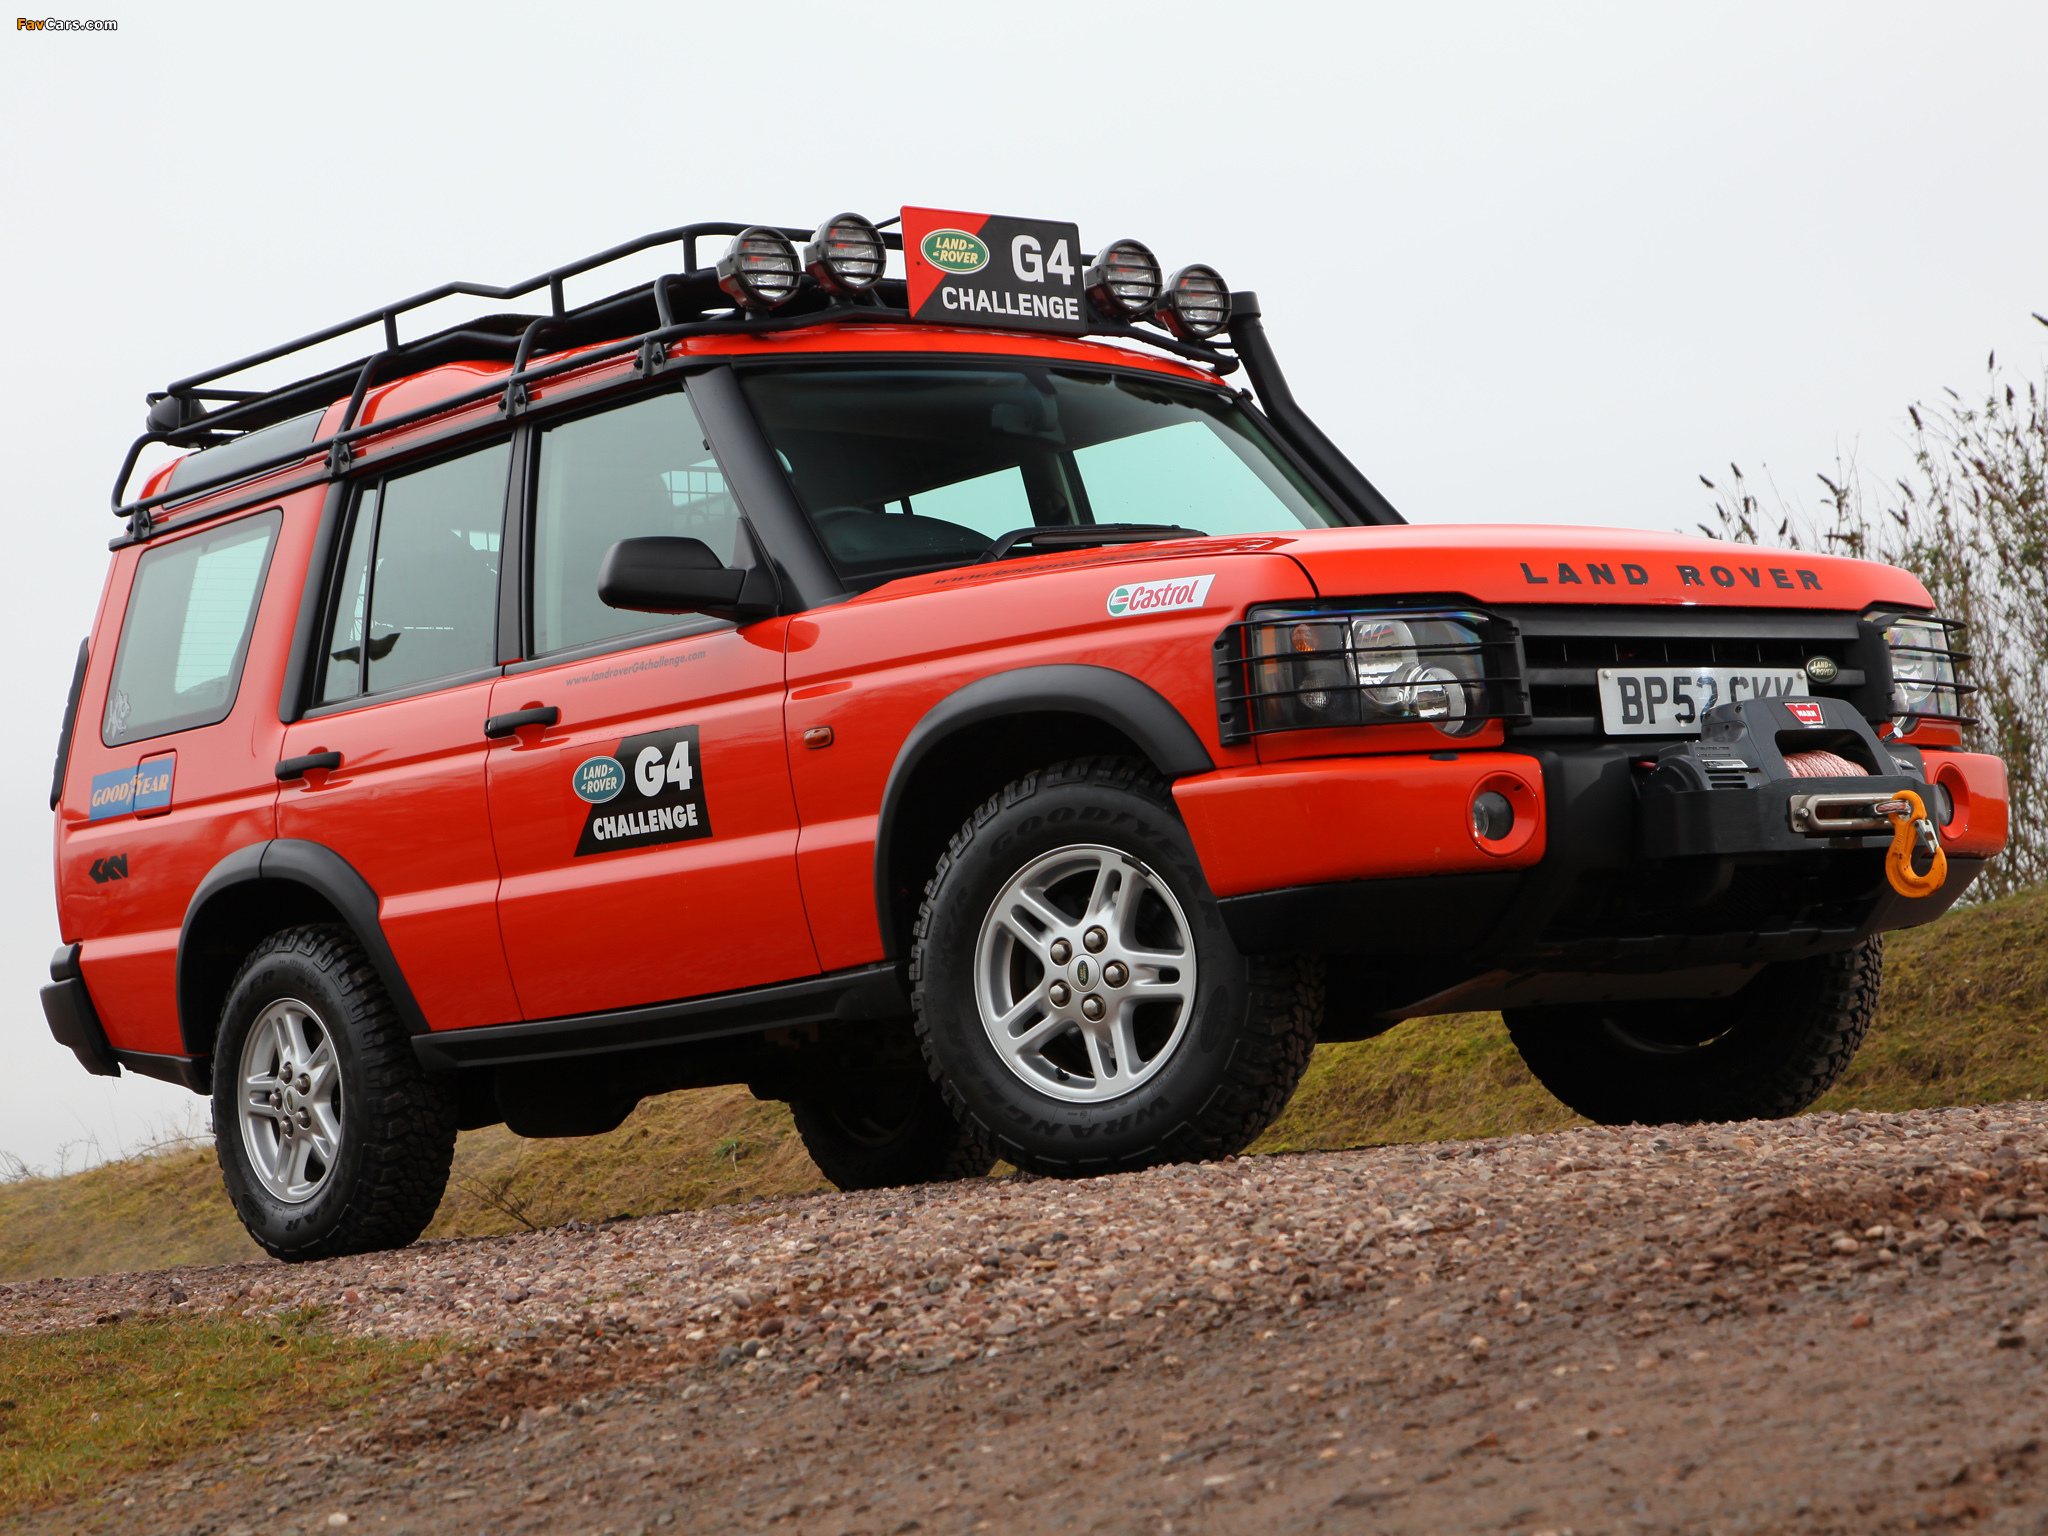 Дискавери история. Land Rover Discovery 2 g4. Land Rover Discovery g4. Land Rover Discovery 2 g4 Challenge. Land Rover Discovery g4 Challenge.